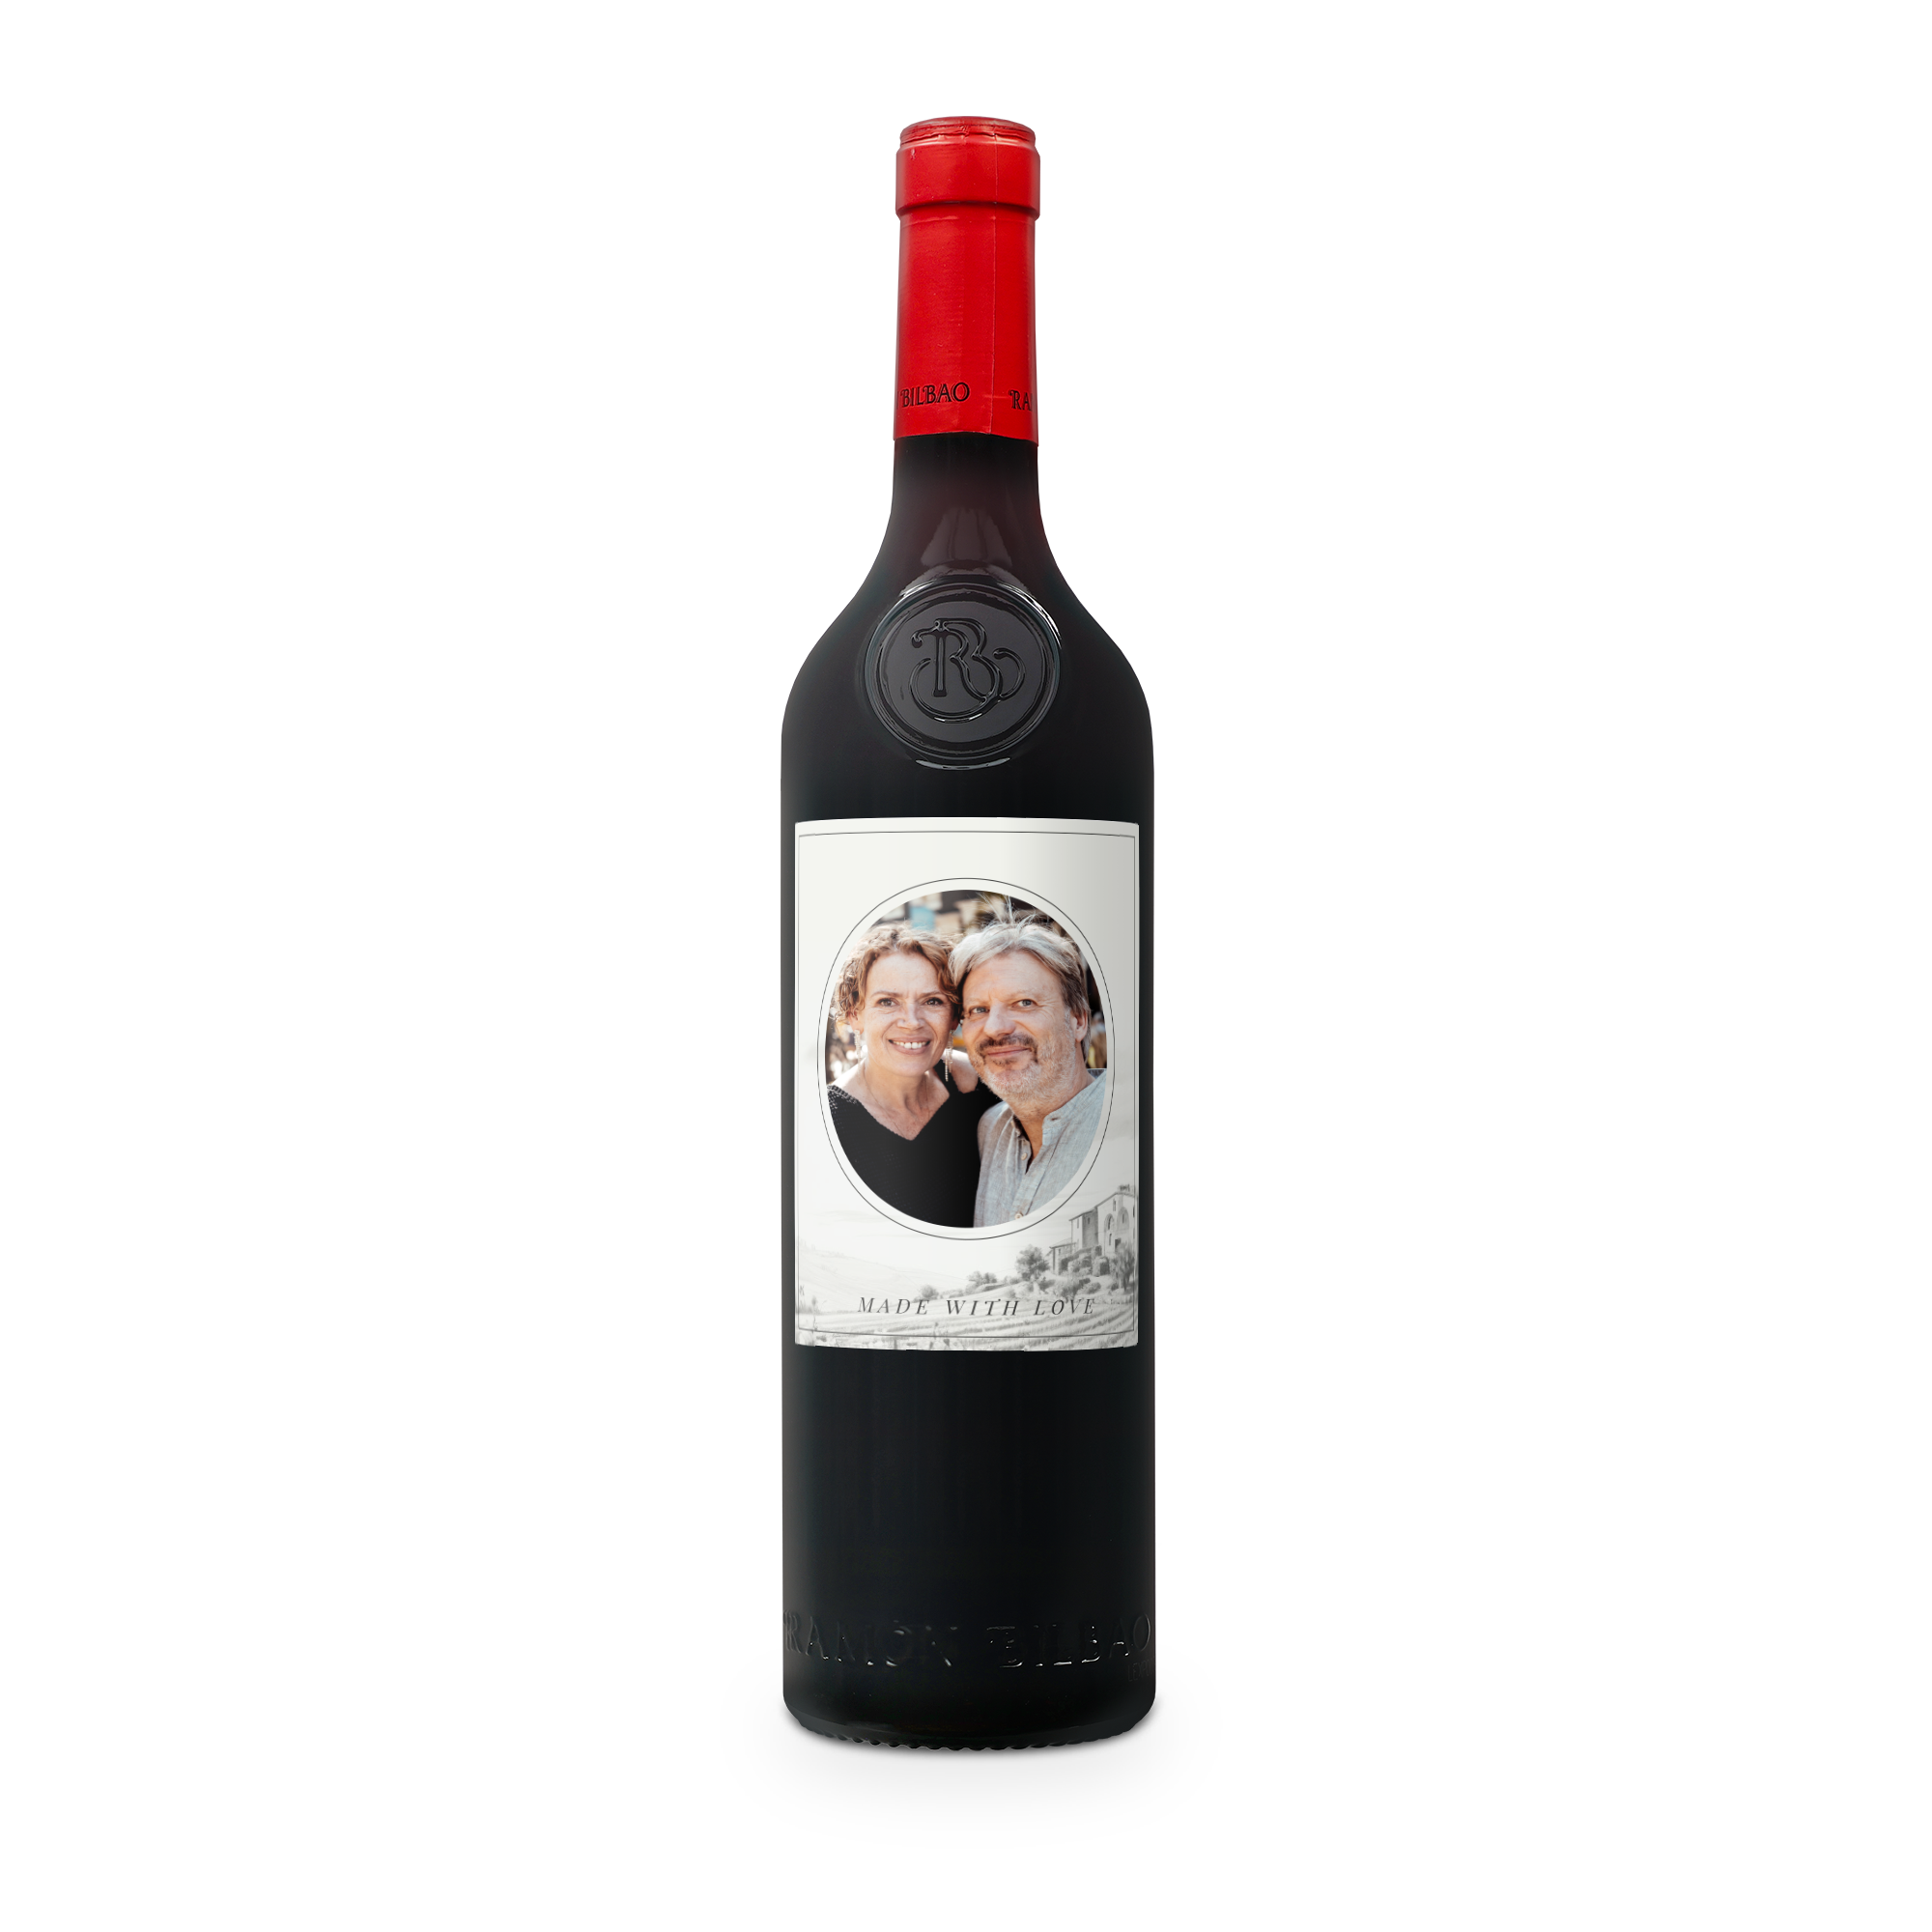 Wein mit eigenem Etikett - Ramon Bilbao Crianza 